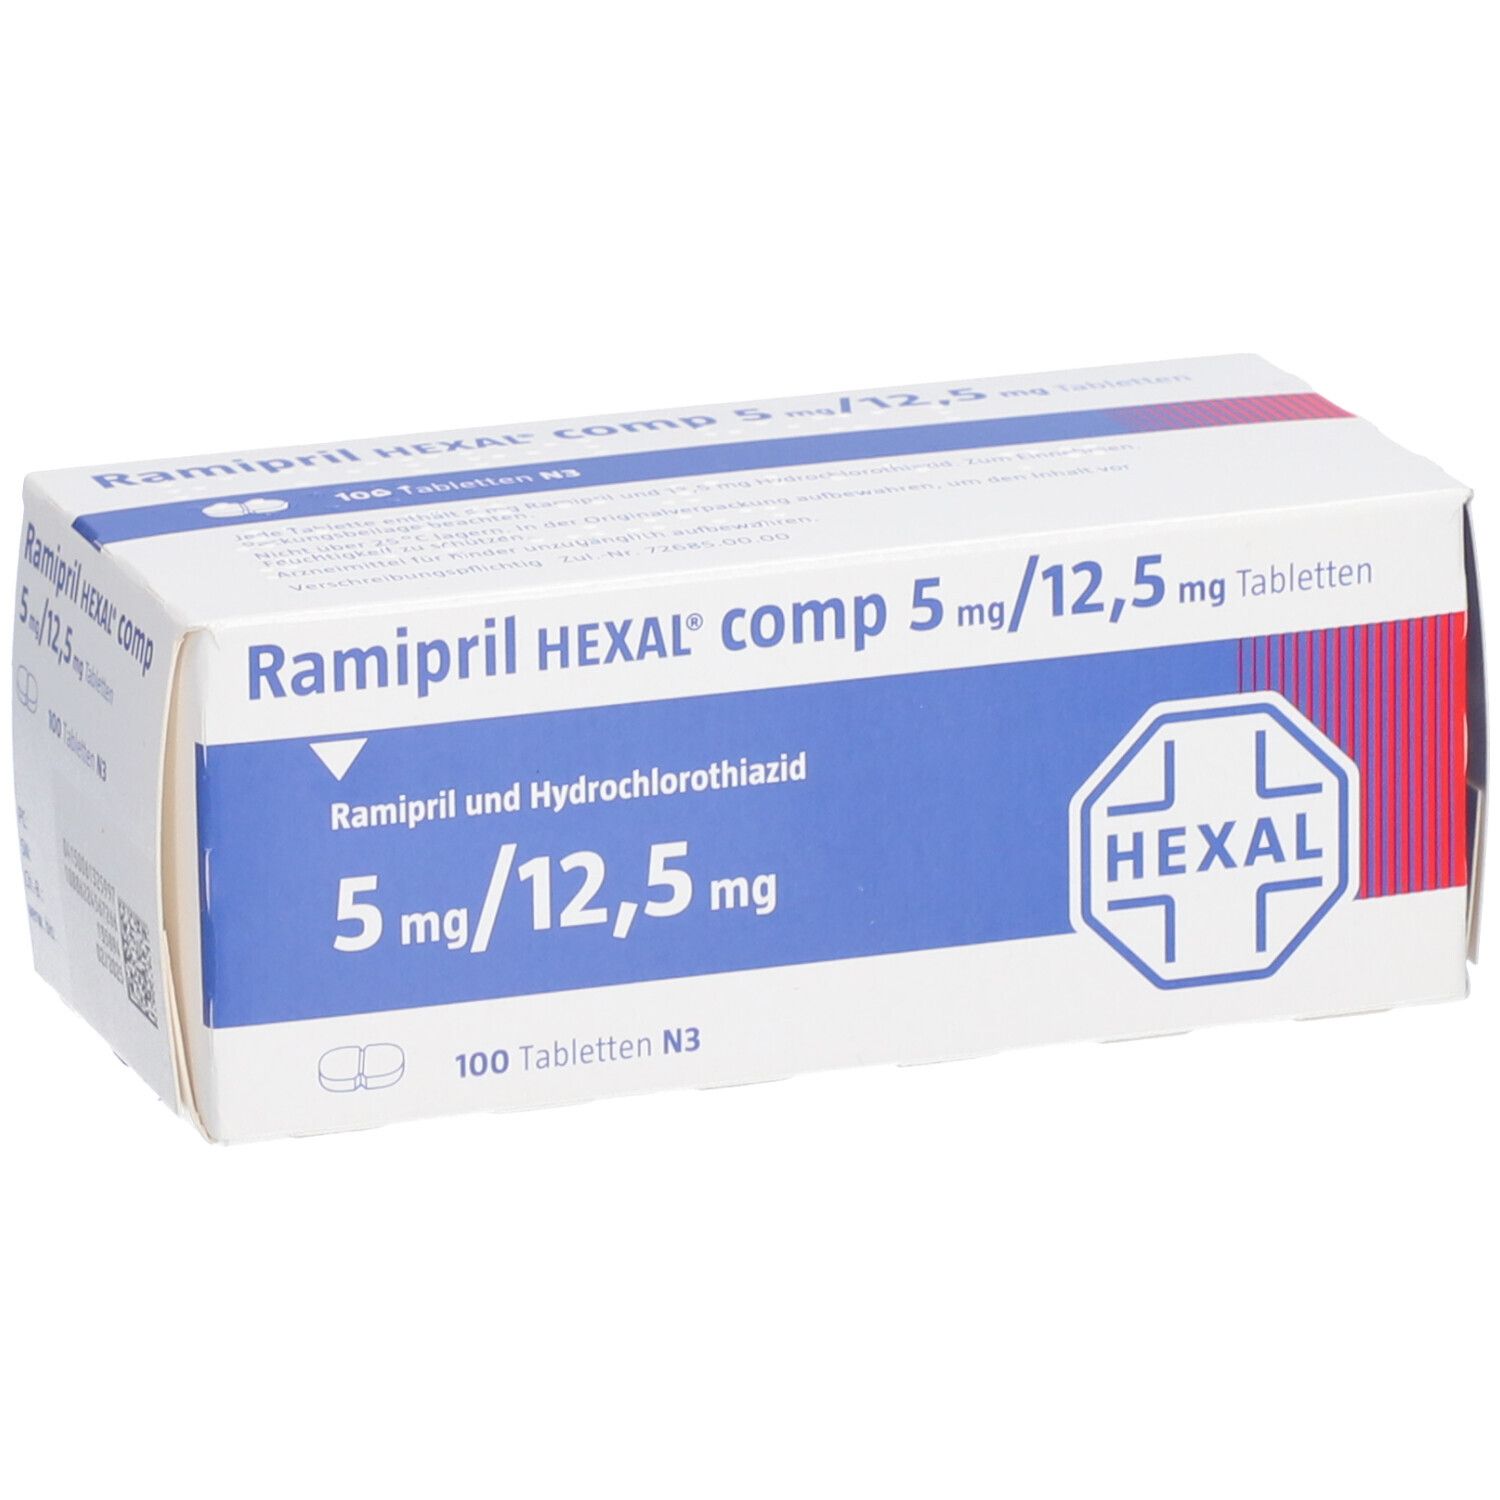 Ramipril HEXAL® comp 5 mg/12,5 mg